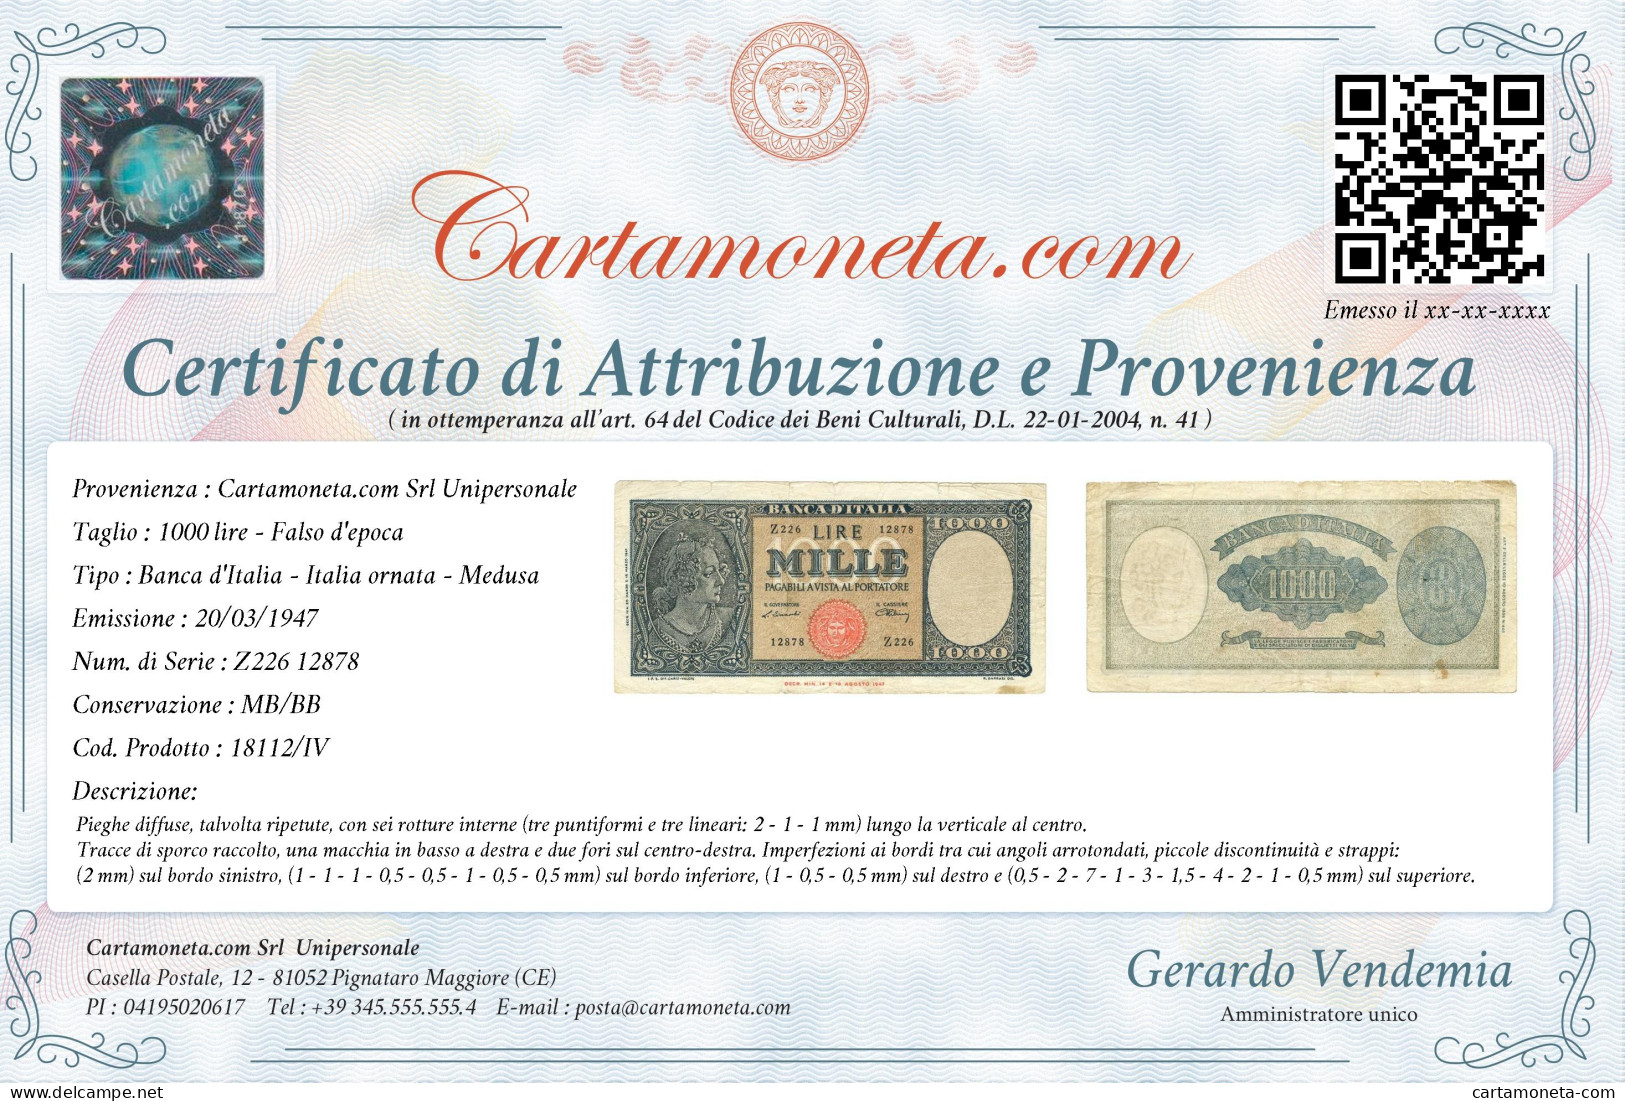 1000 LIRE FALSO D'EPOCA ITALIA ORNATA DI PERLE MEDUSA 20/03/1947 MB/BB - [ 8] Falsi & Saggi